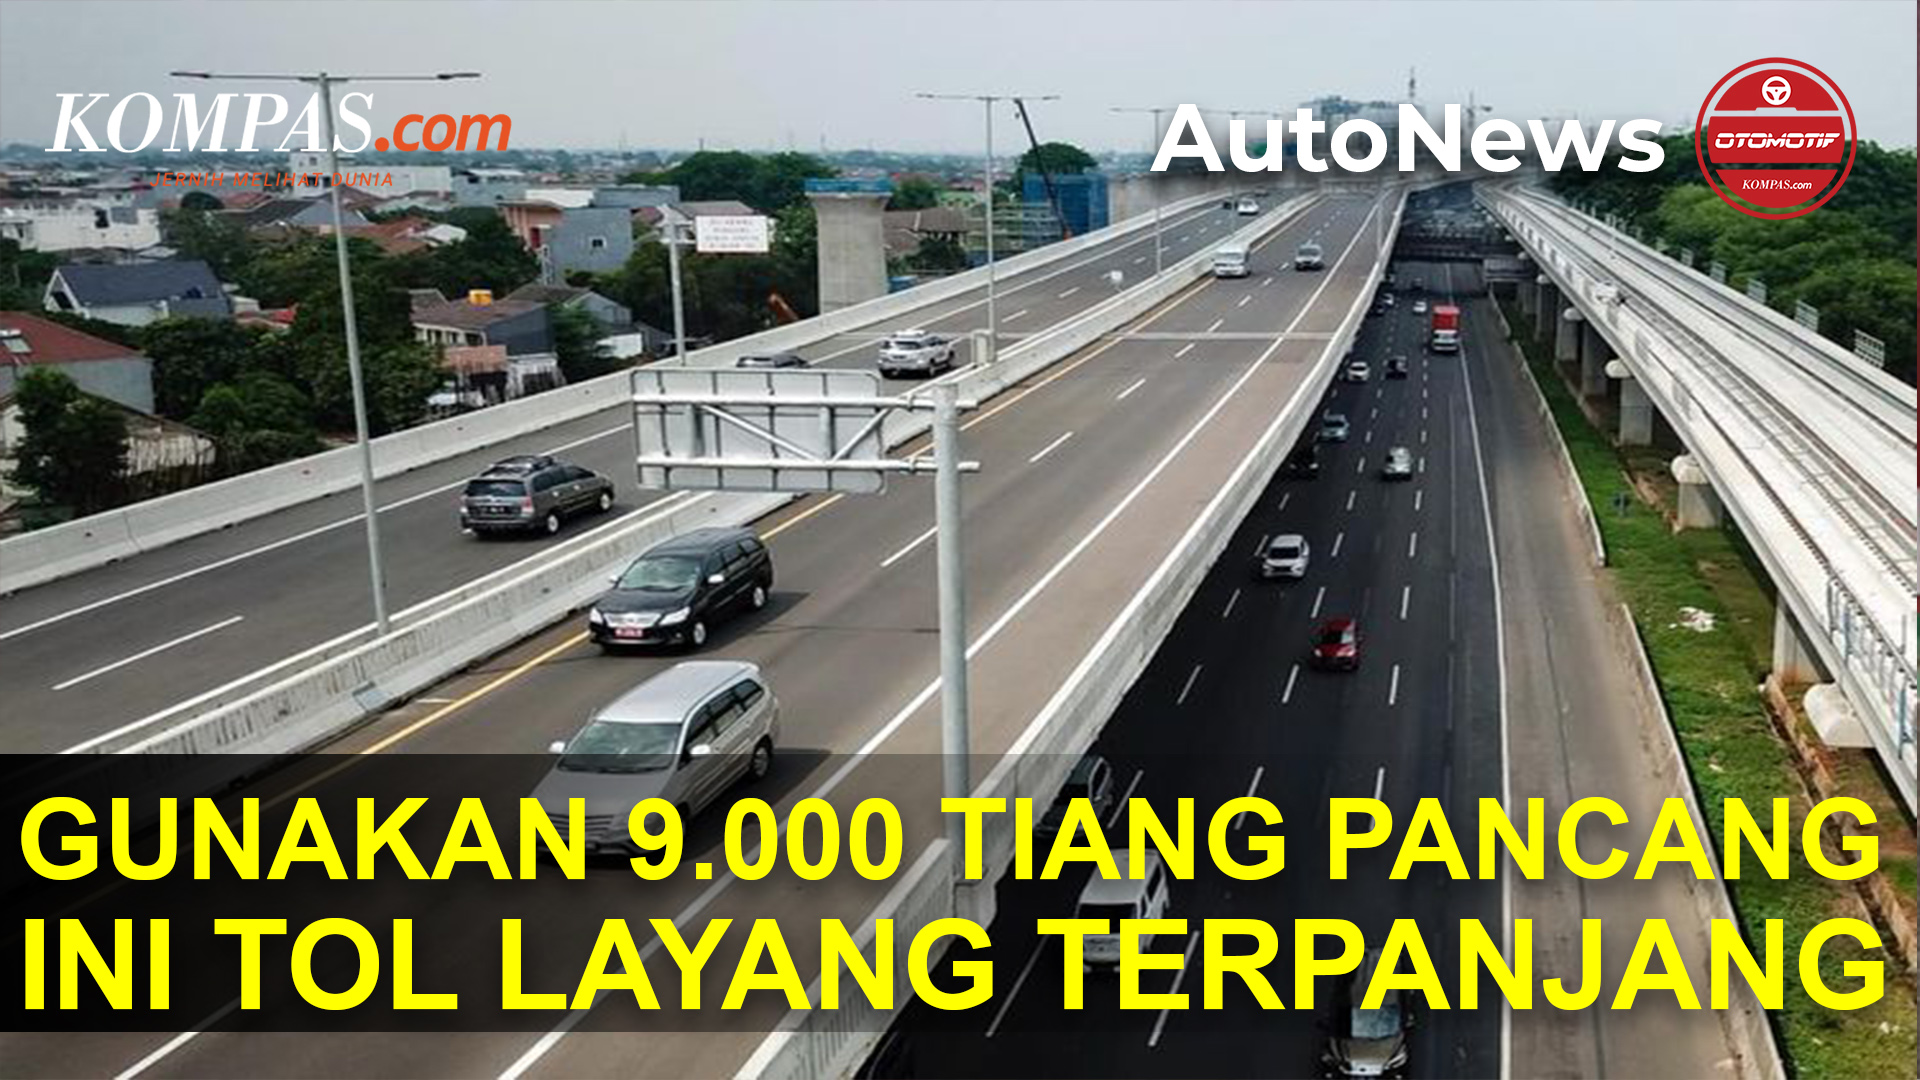 Memakai 9.000 Tiang Pancang, Ternyata Ini Jalan Tol Layang Terpanjang di Indonesia